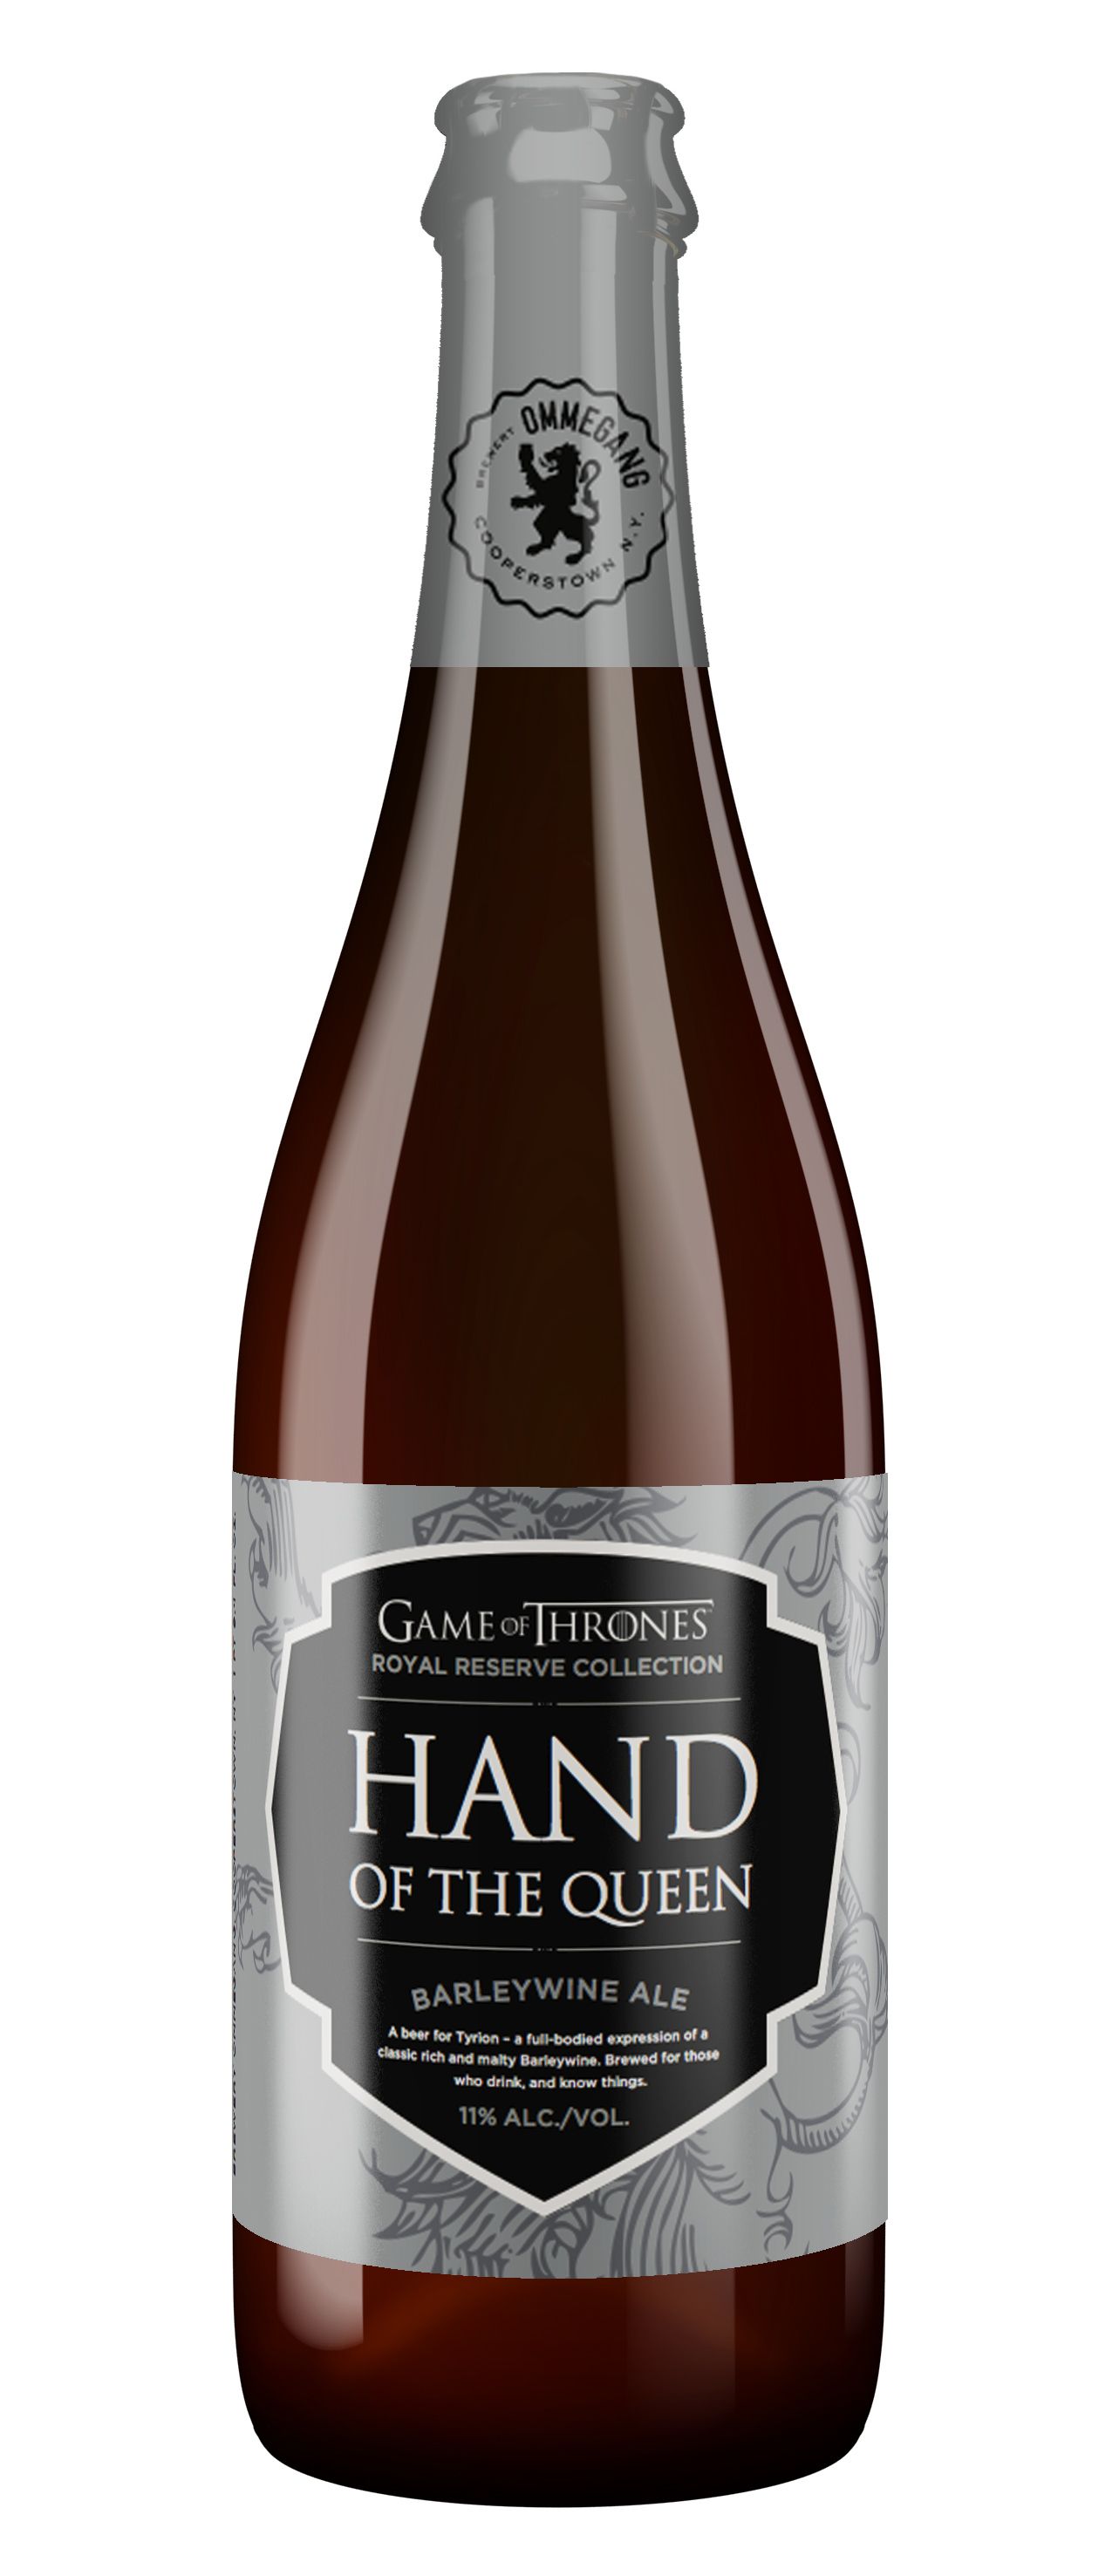 Hand of the Queen Beer Game of Thrones